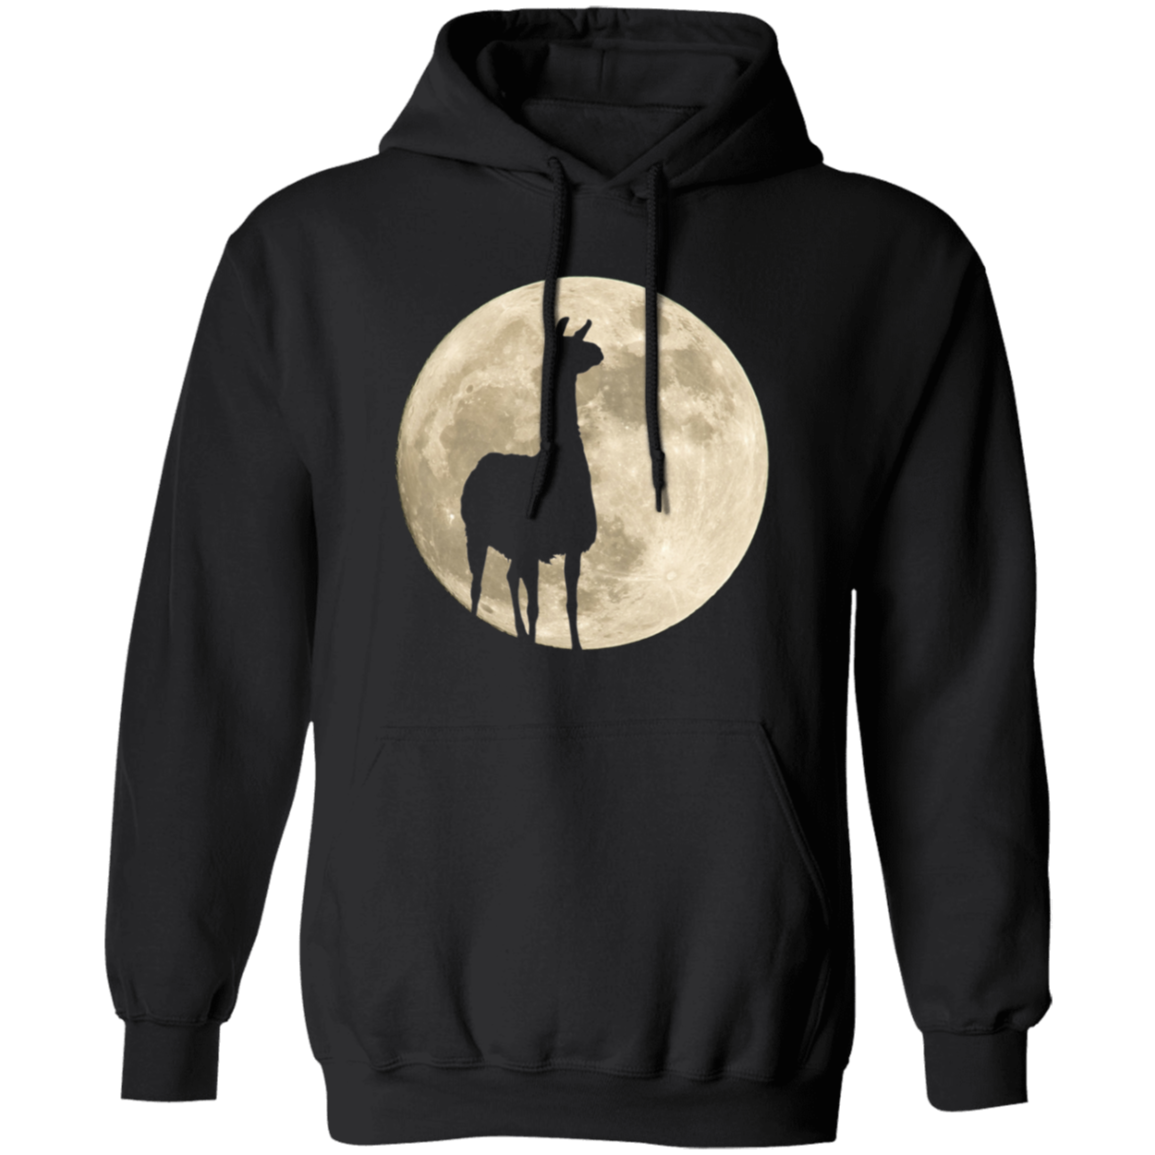 Llama Moon - T-shirts, Hoodies and Sweatshirts